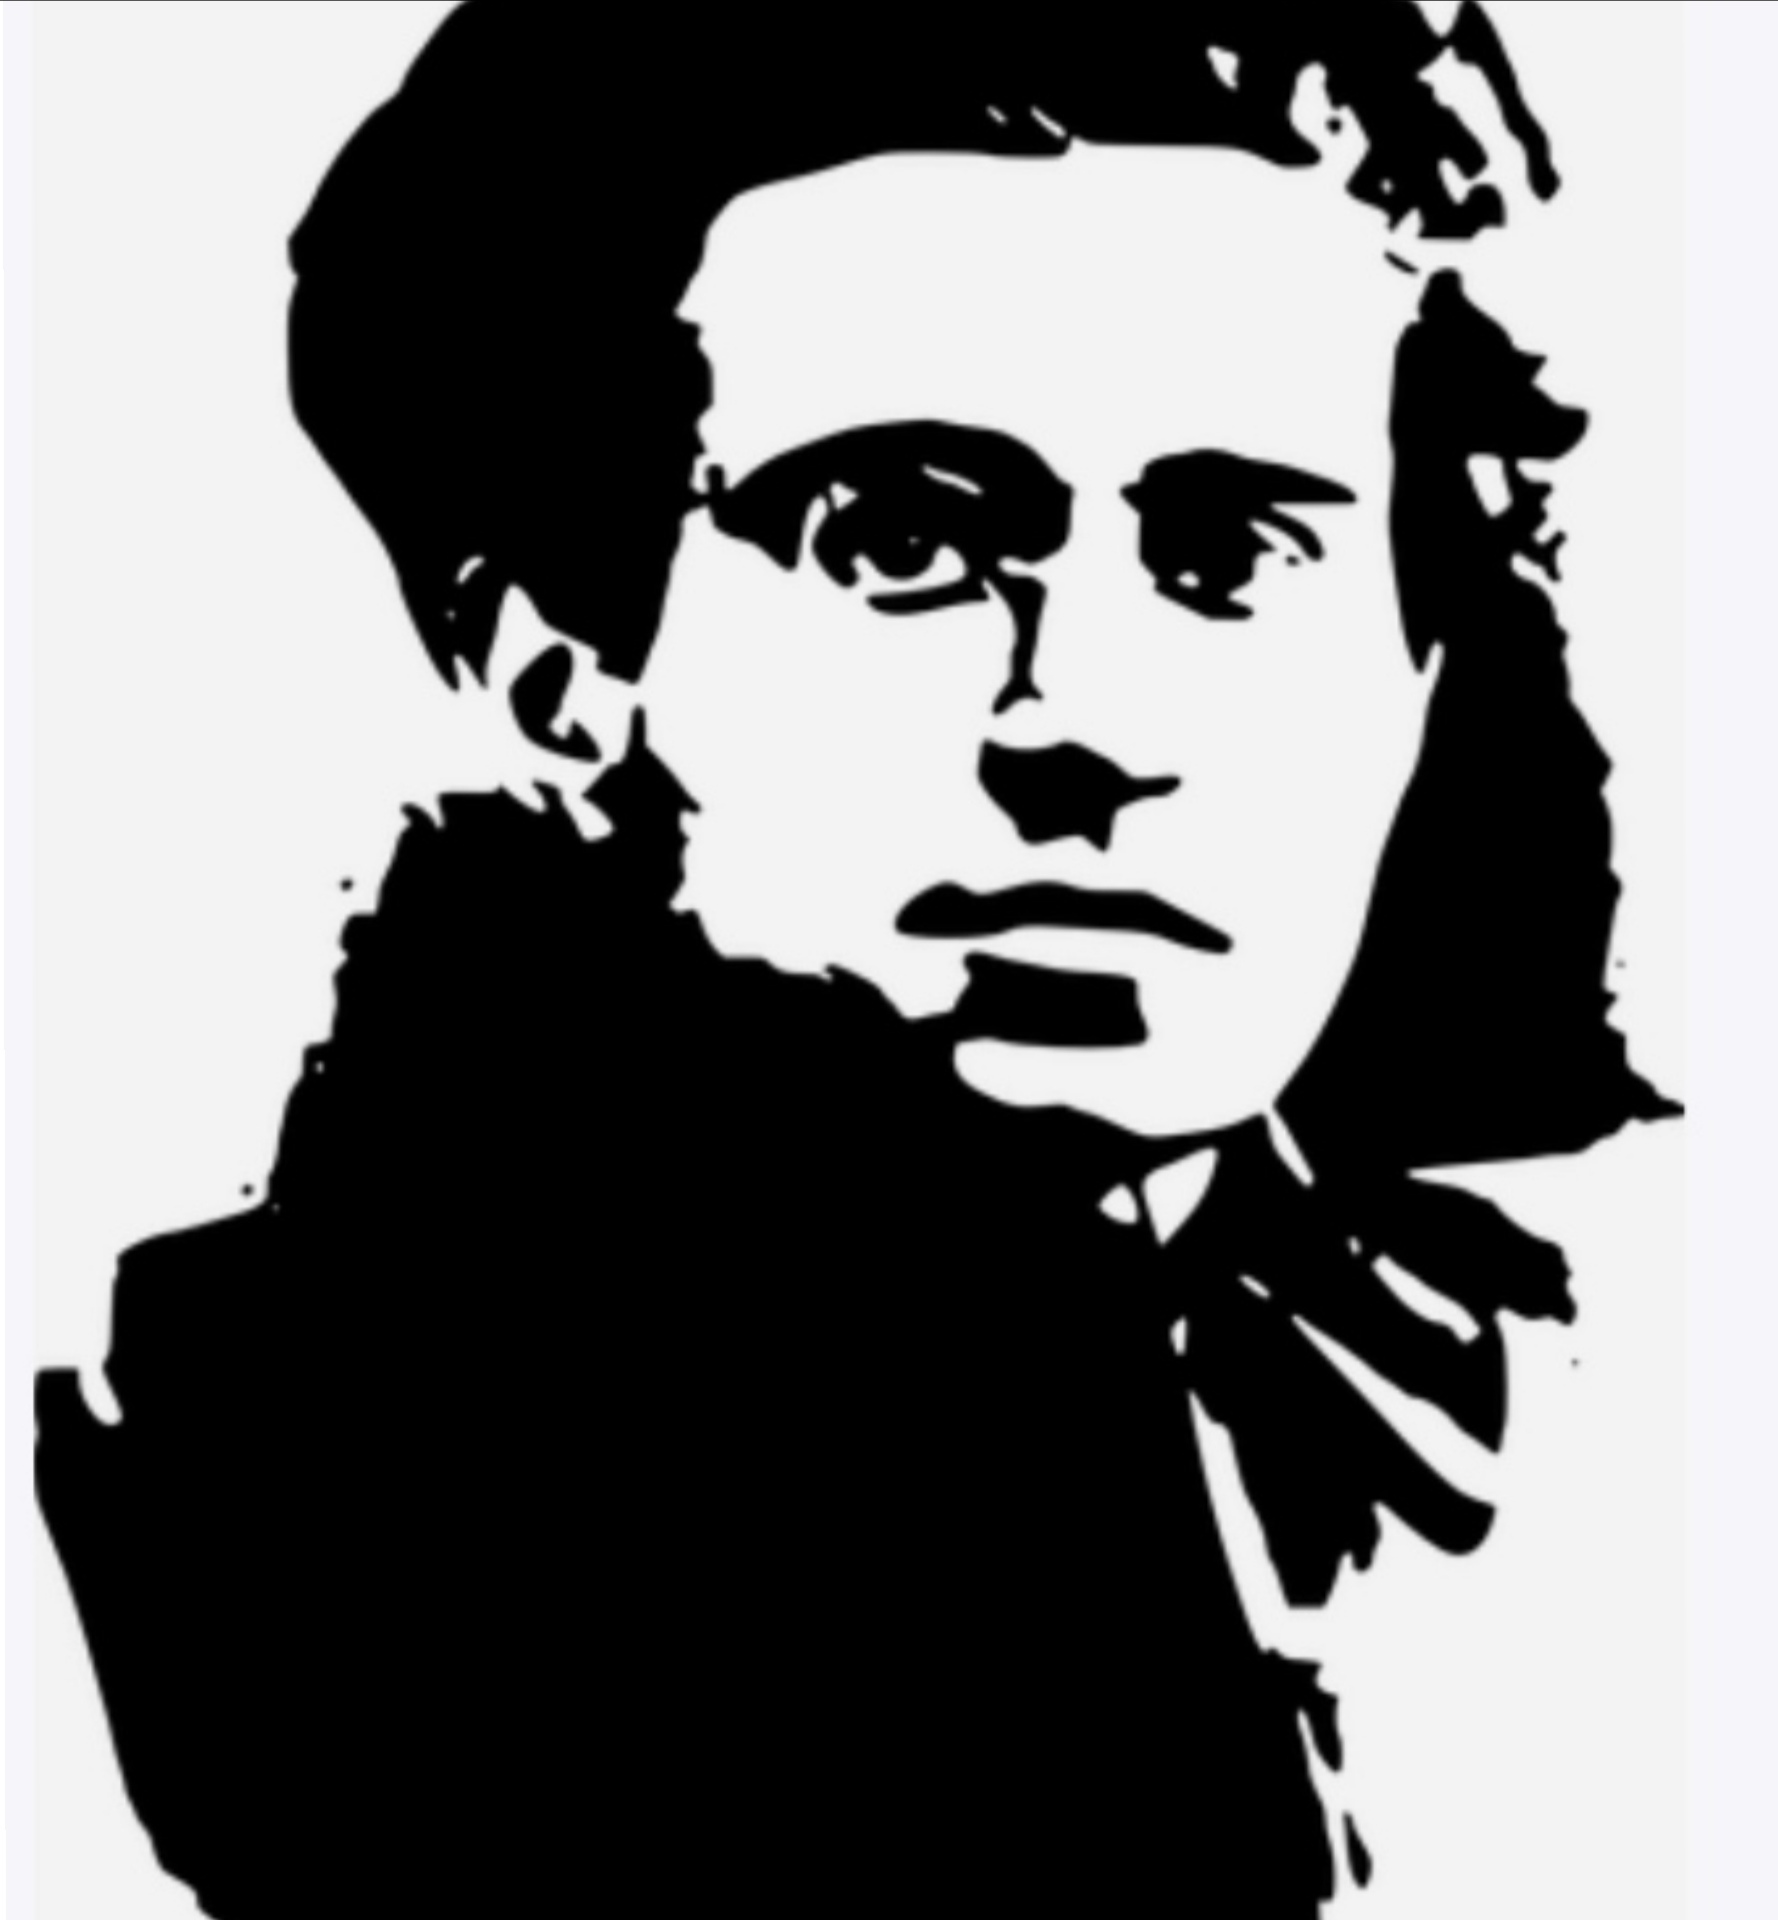 Il 22 Gennaio 1891 nasceva Antonio Gramsci